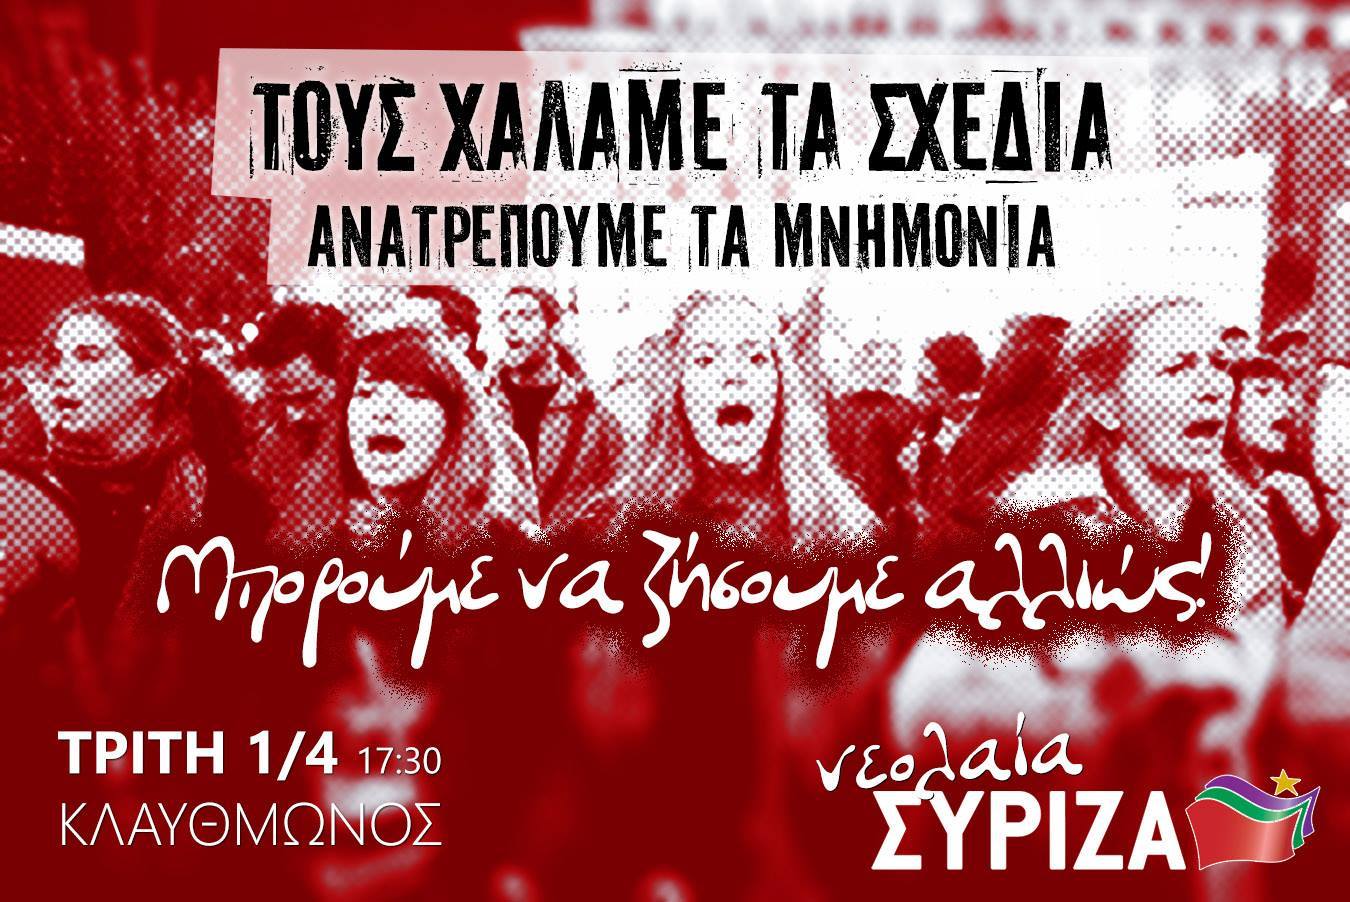 Ανακοίνωση της νεολαίας ΣΥΡΙΖΑ για τη σύνοδο του ΕΚΟΦΙΝ στην Αθήνα την Τρίτη 1/4   